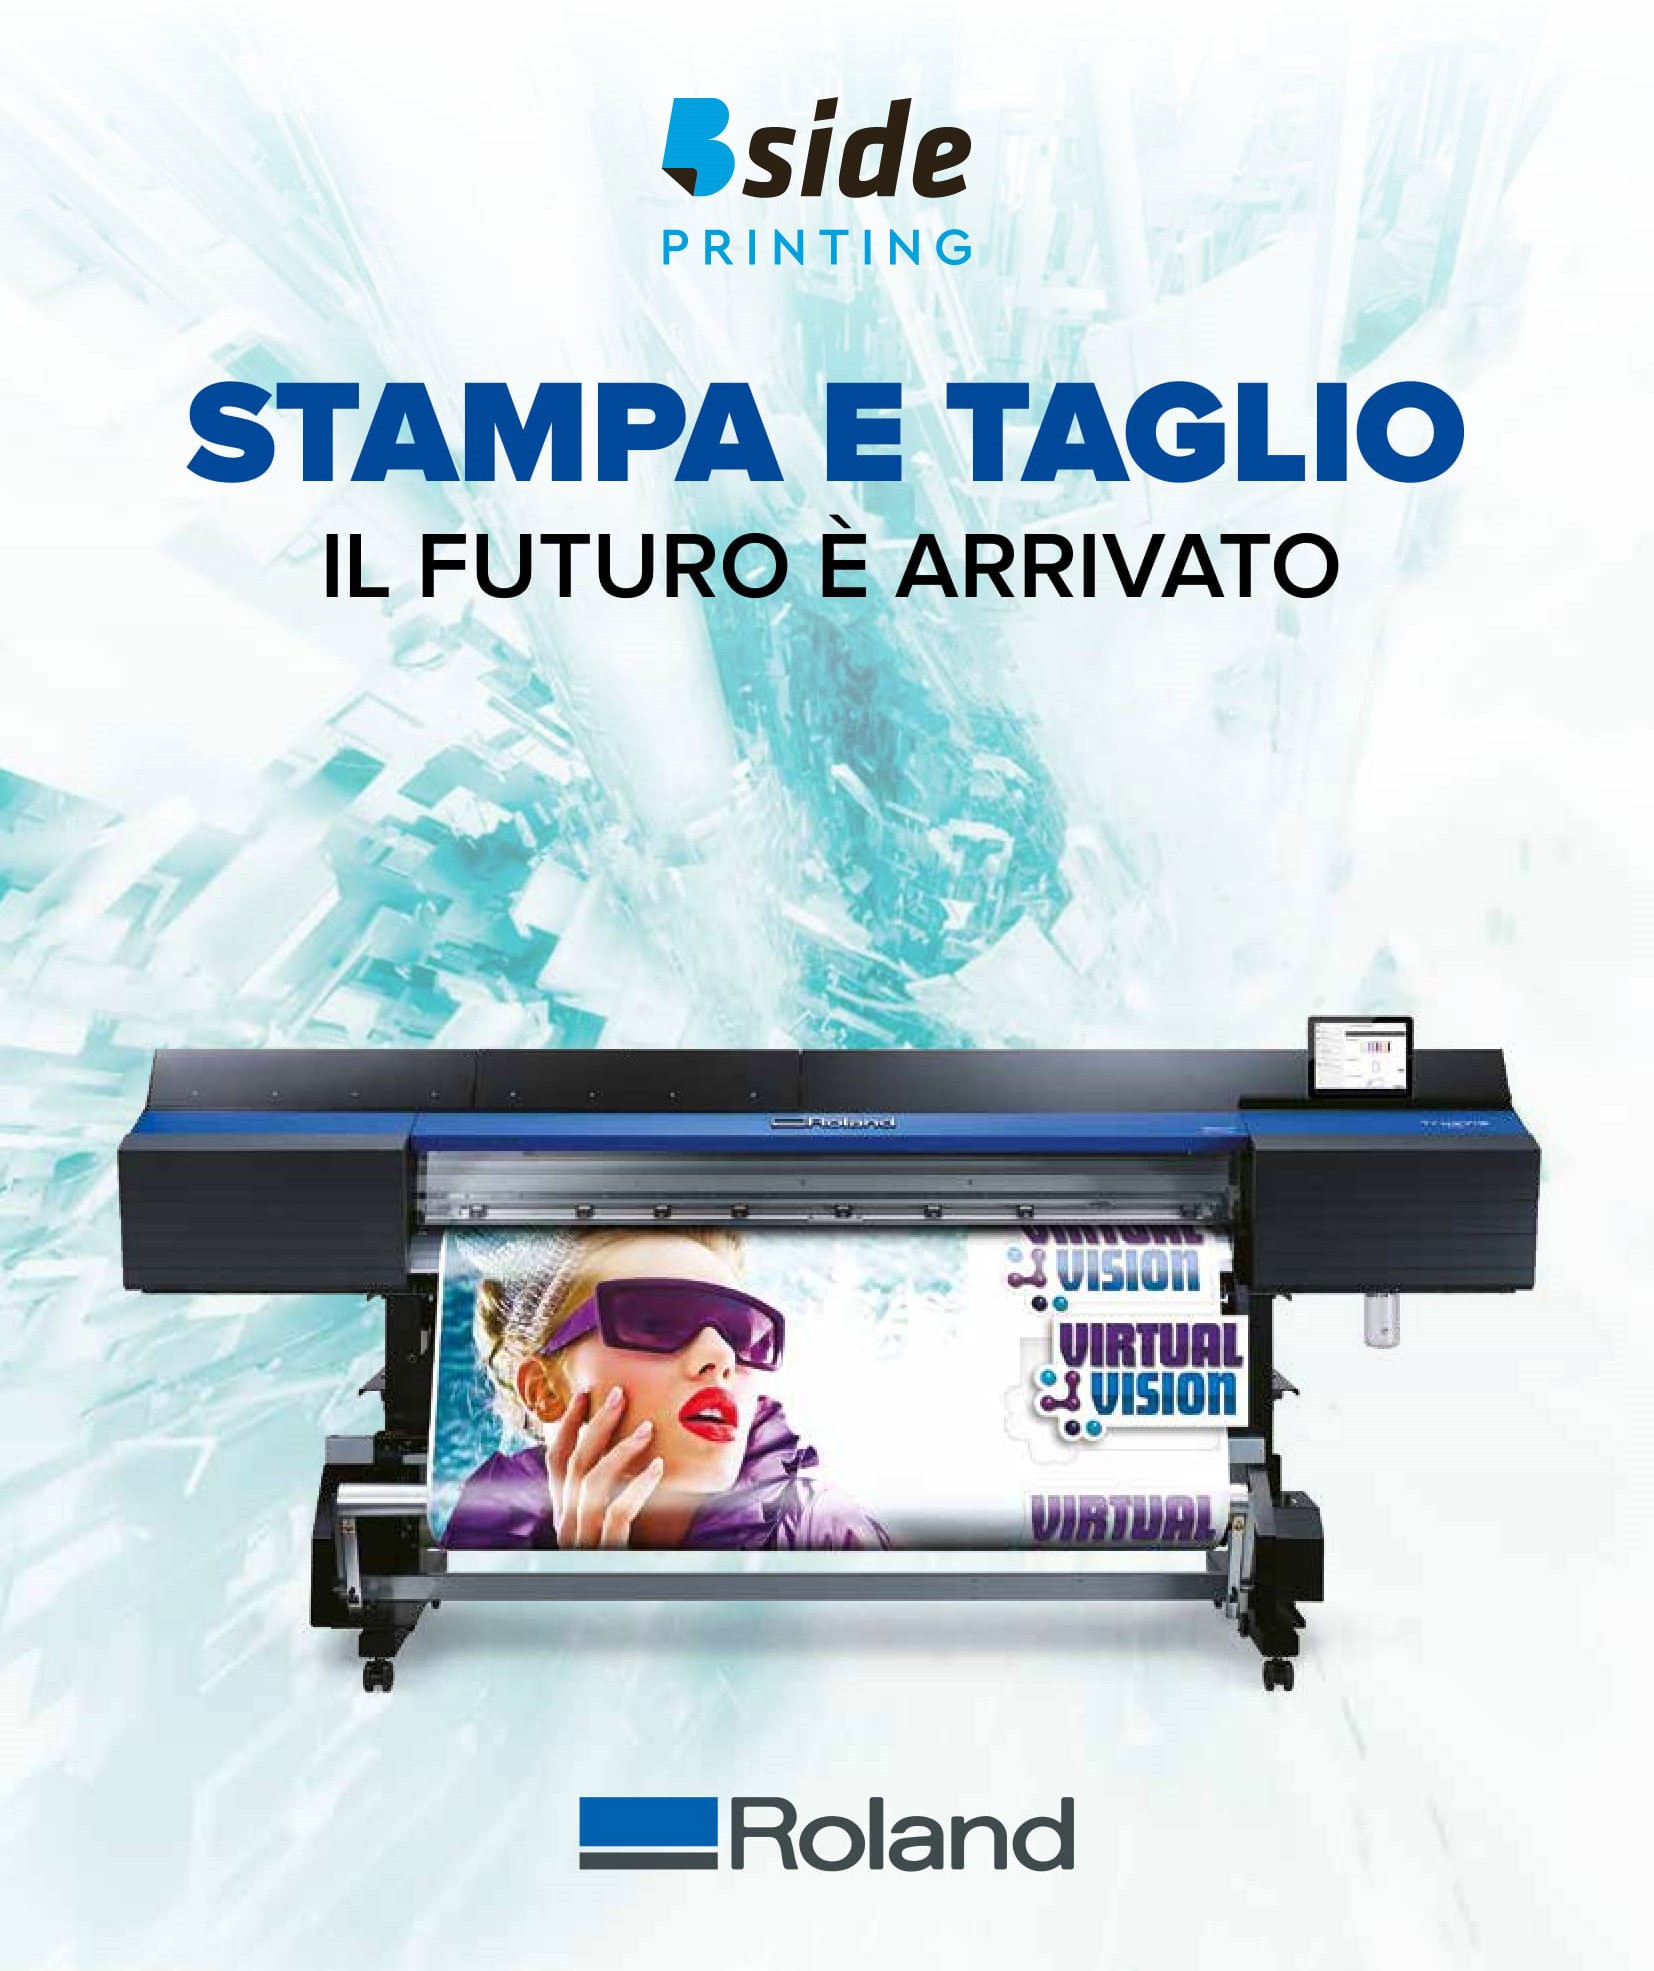 bside-printing-stampante-printer-roland-truevis-vg640-stampa-taglio-precisione-digitale-nuova-tecnologia-piacenza-milano-bologna-torino